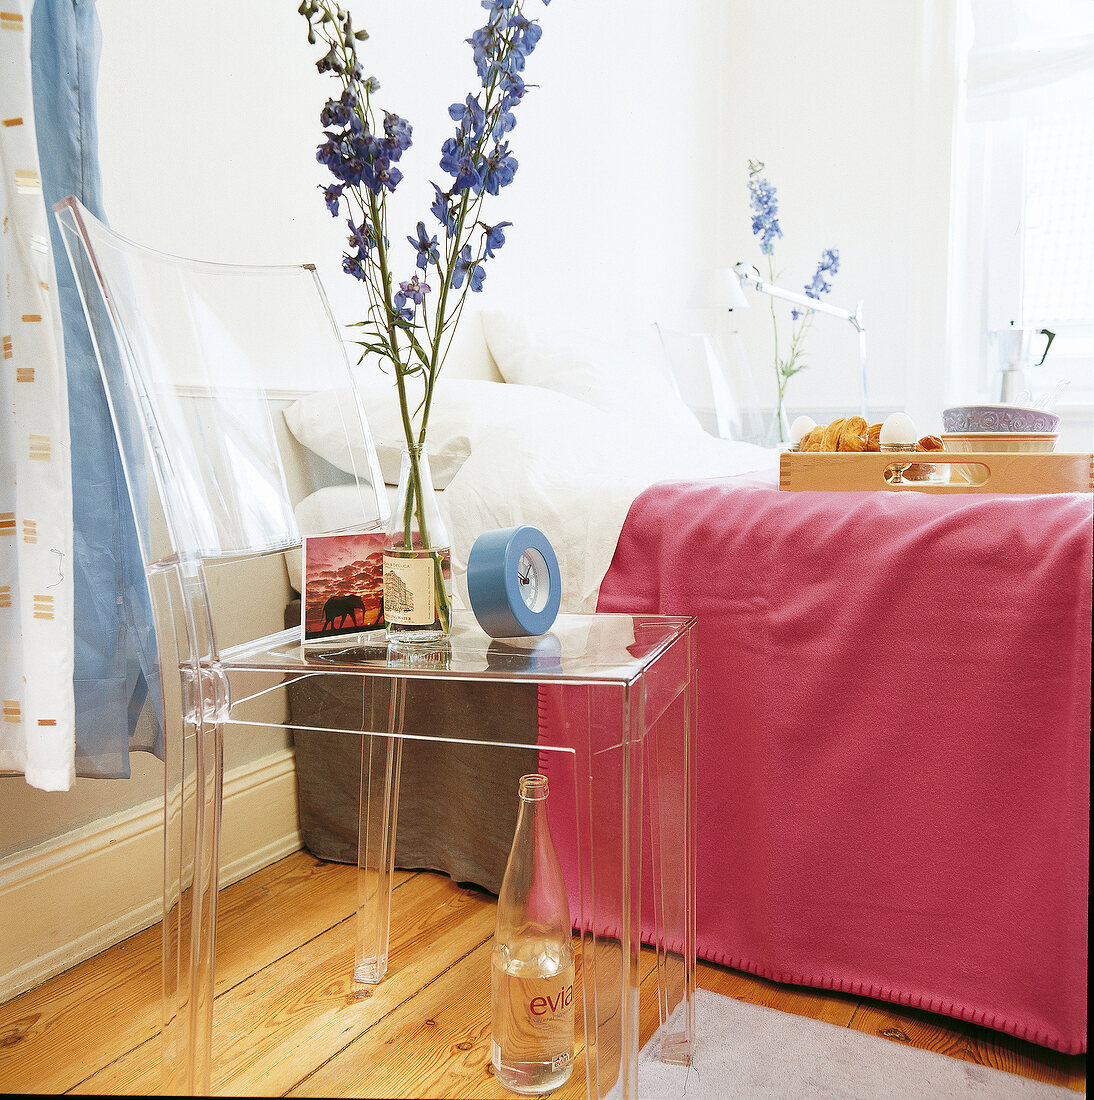 Neben dem Doppelbett dient der klare Kunststoffstuhl als Nachttisch